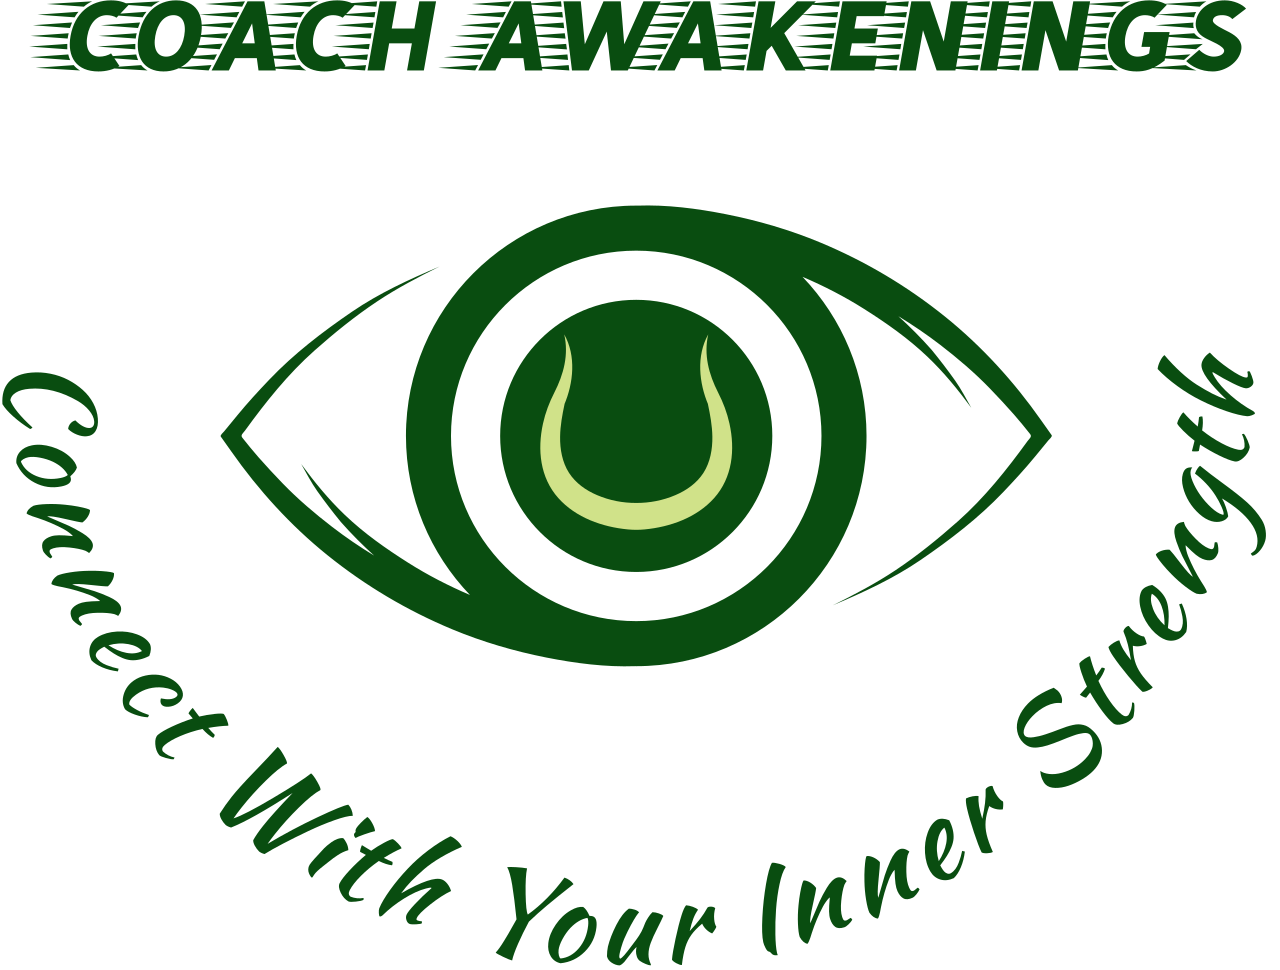 COACH AWAKENINGS 's logo